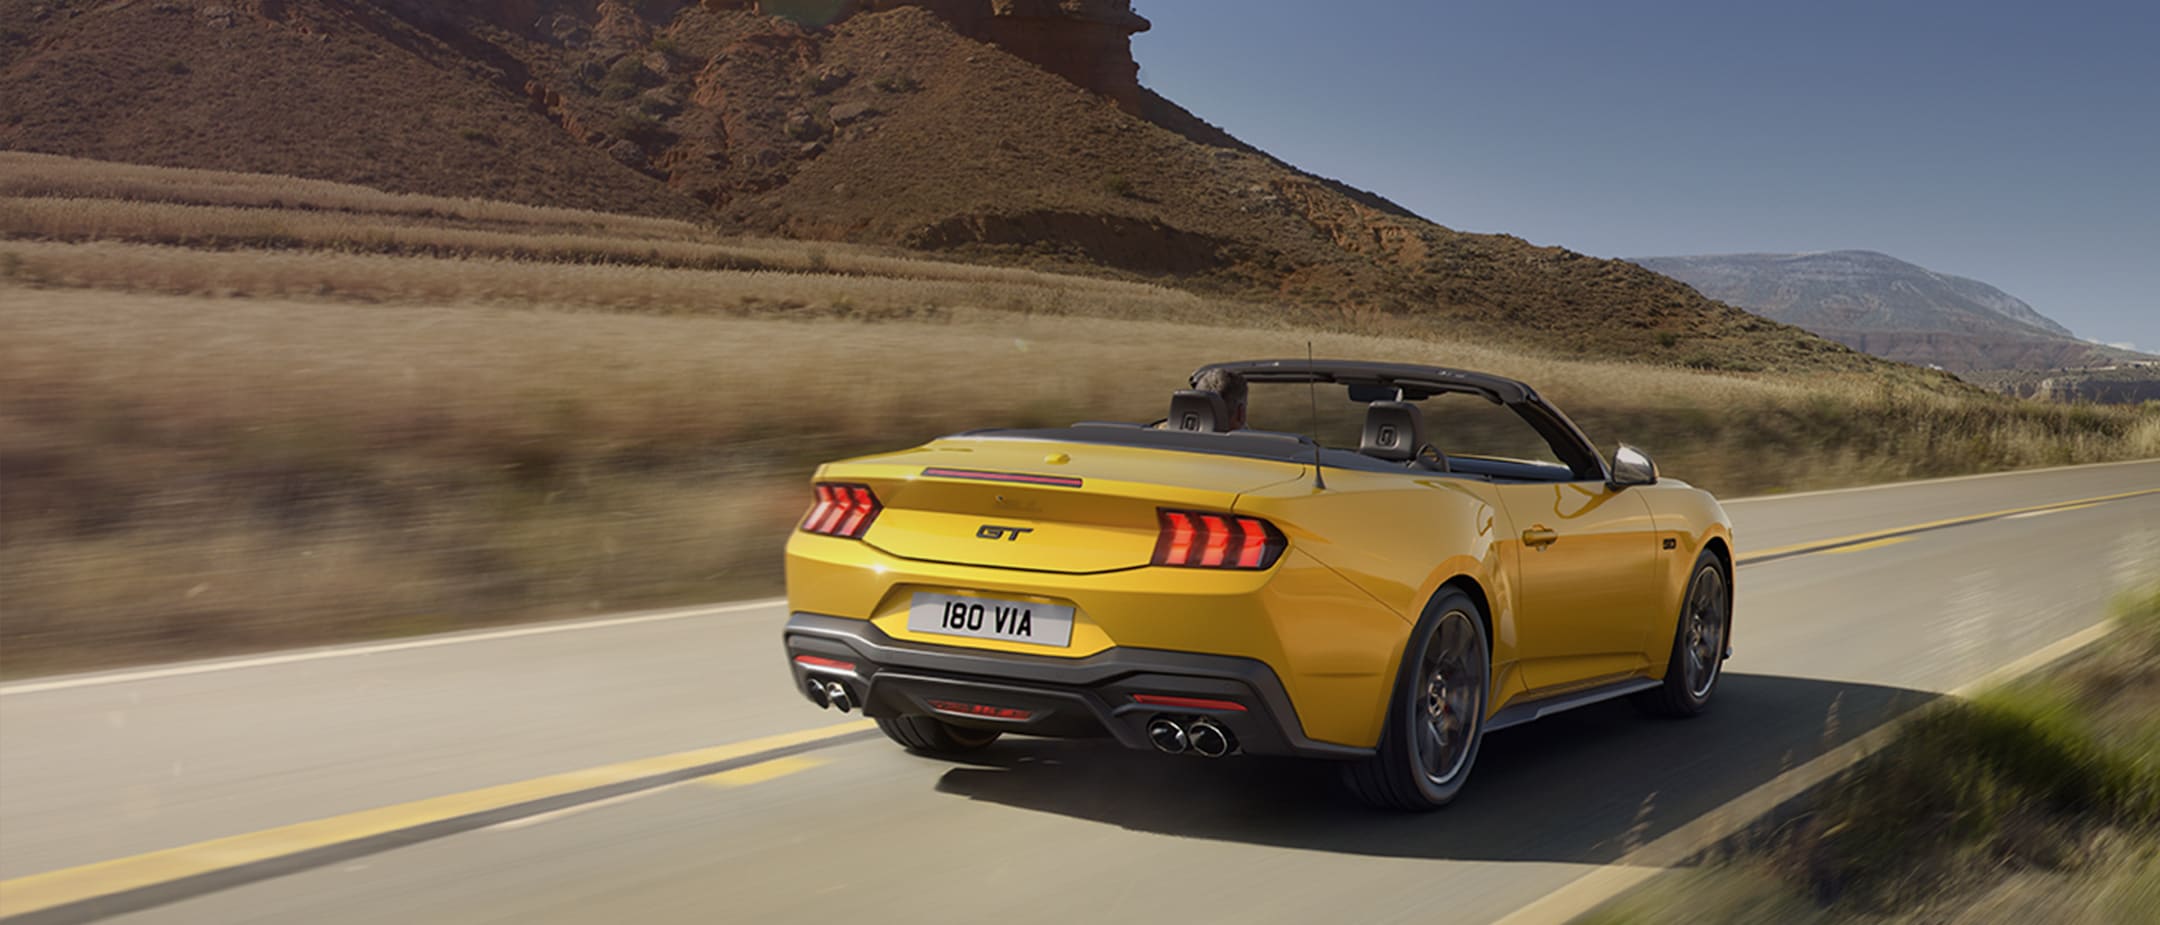 Ford Mustang in Gelb. Heckansicht, fährt auf einer Straße mit Bergen im Hintergrund